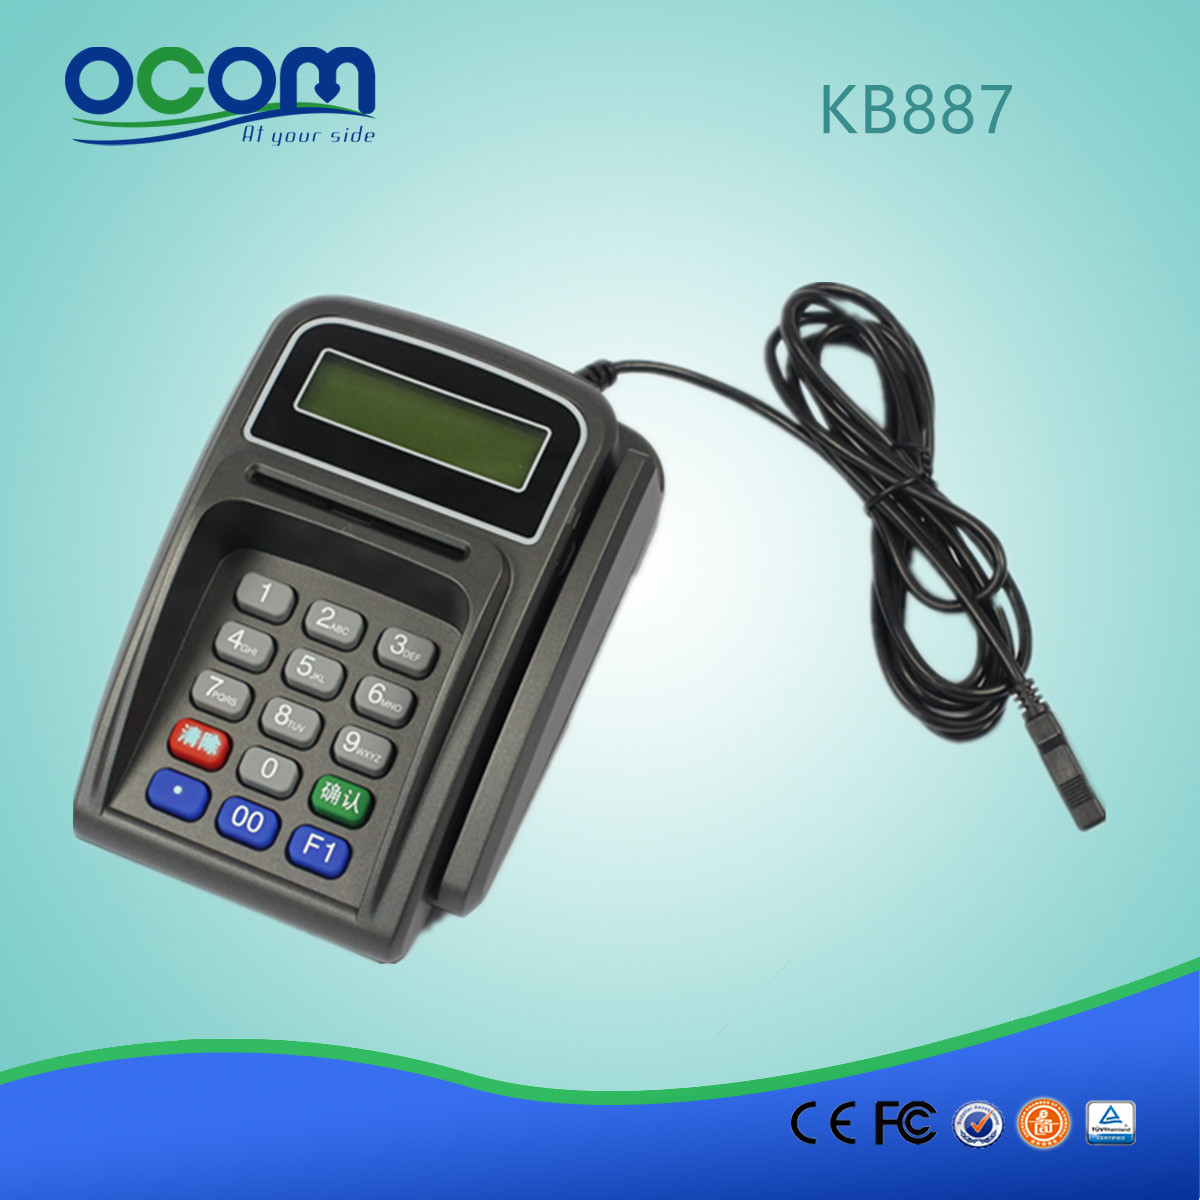 مصغرة لوحة المفاتيح مع قارئ البطاقة الذكية وقارئ البطاقة الممغنطة KB887